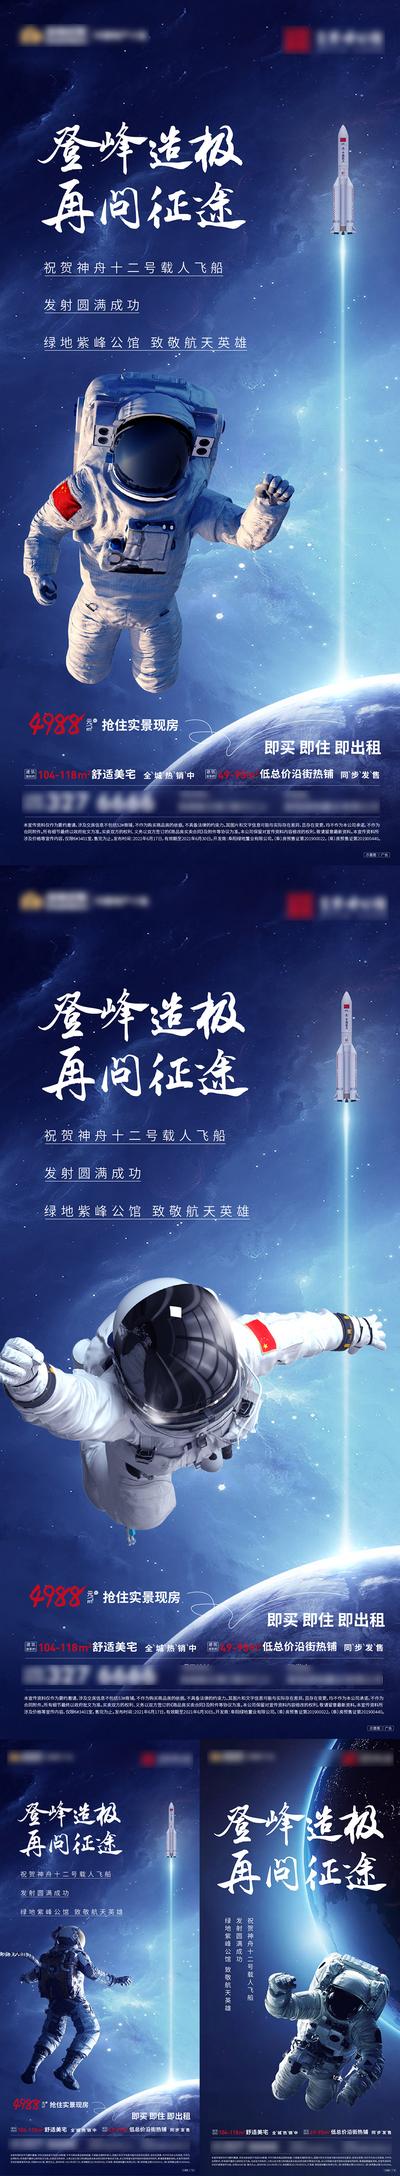 【南门网】海报 地产 神州飞天 宇航员 太空人 火箭 系列